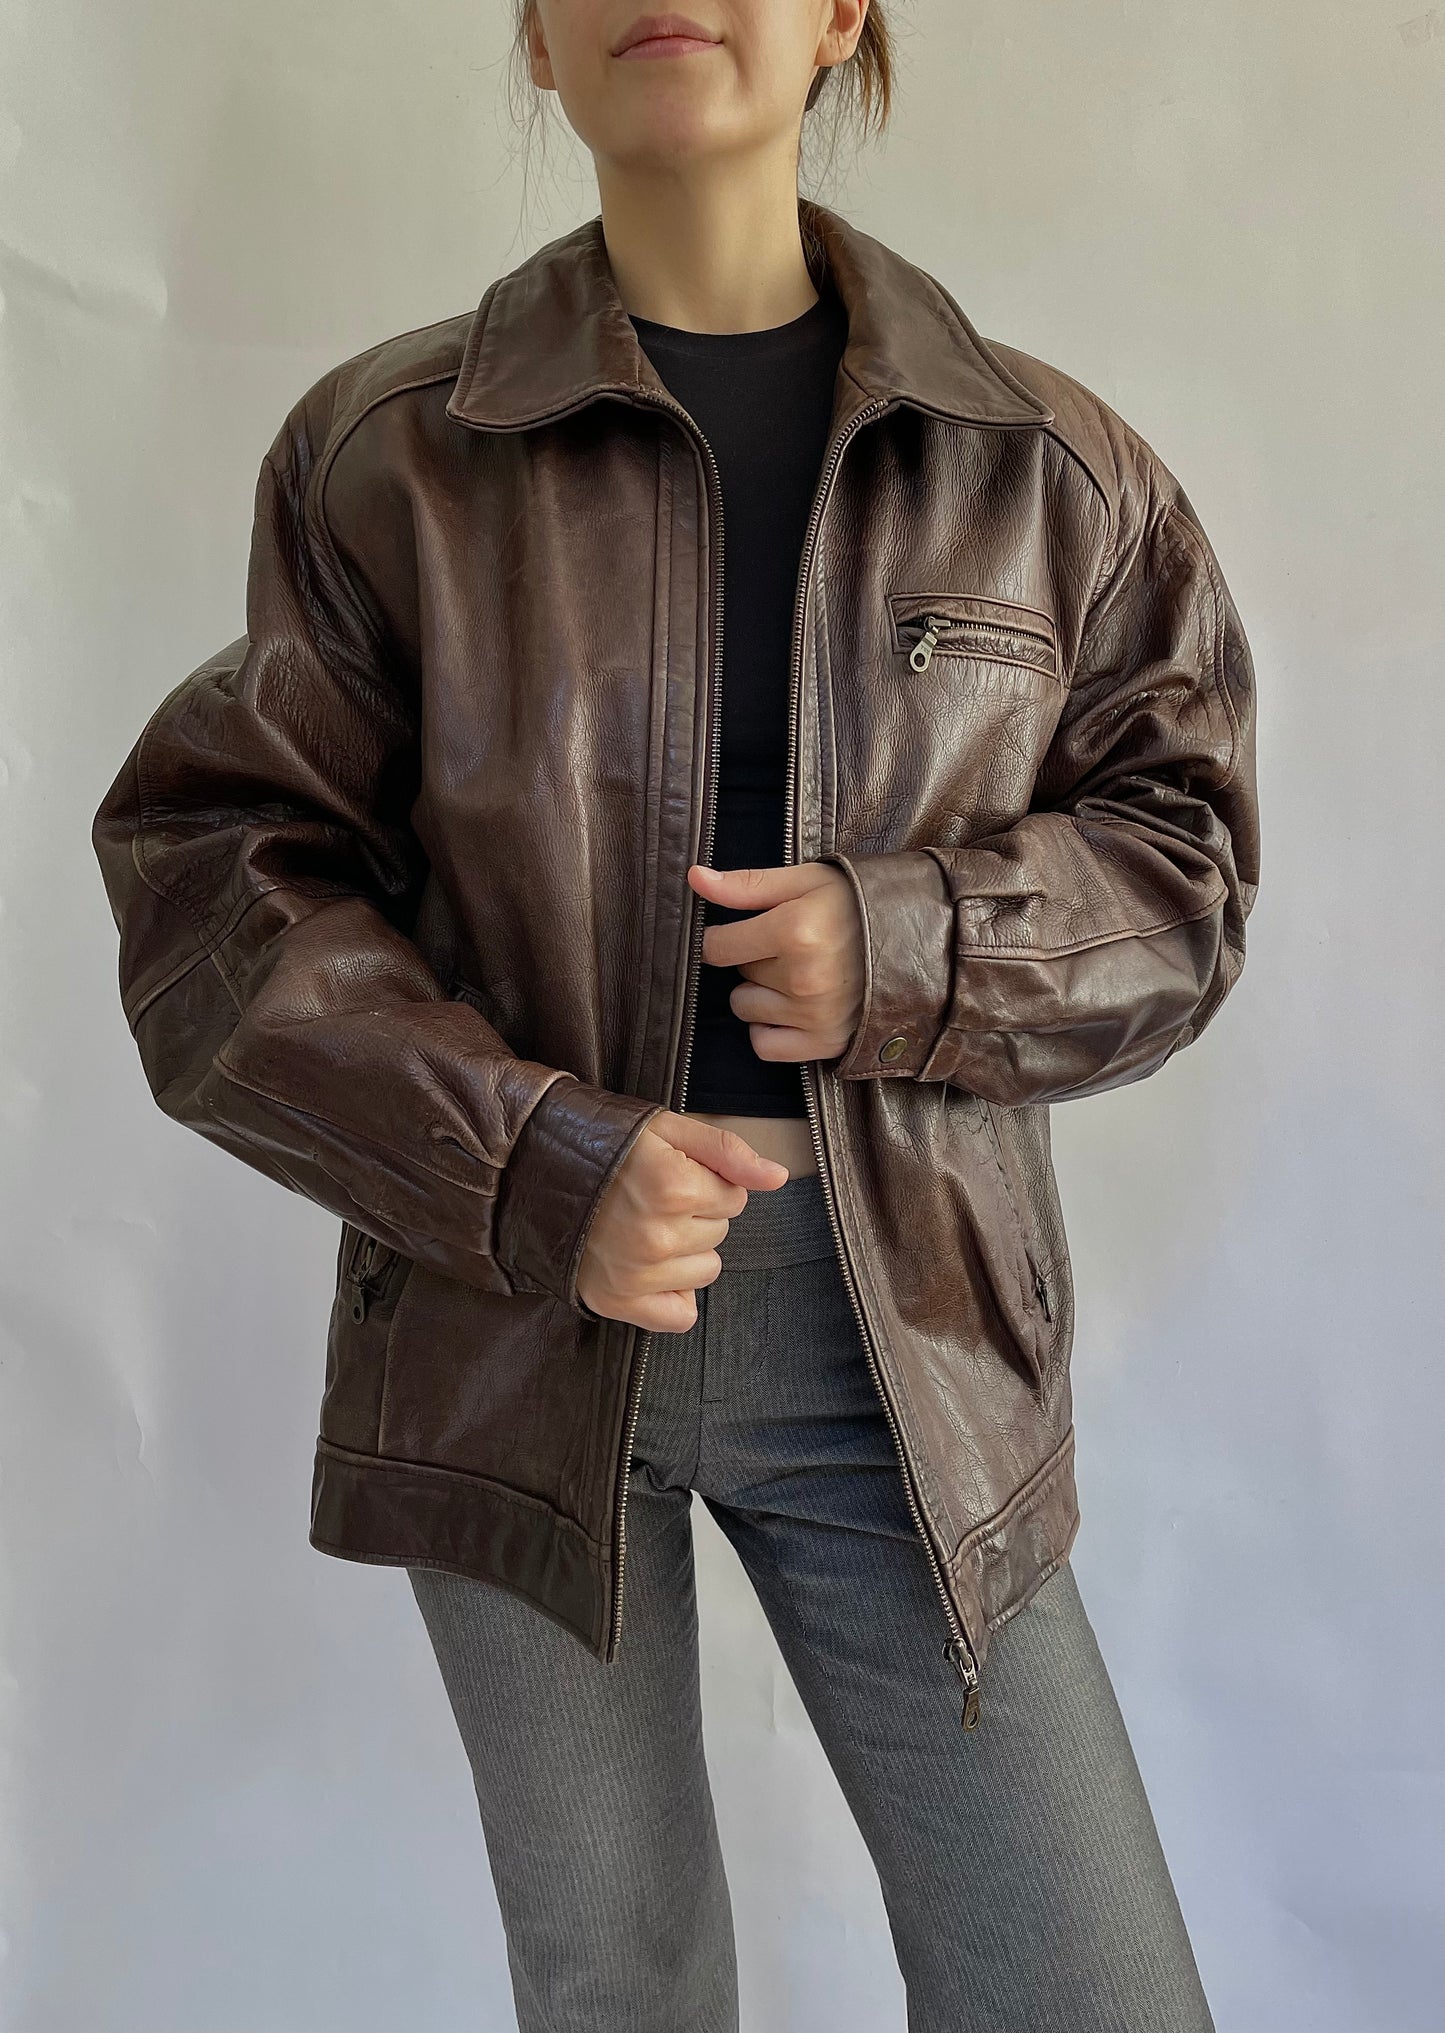 Vintage oversized brown leather jacket